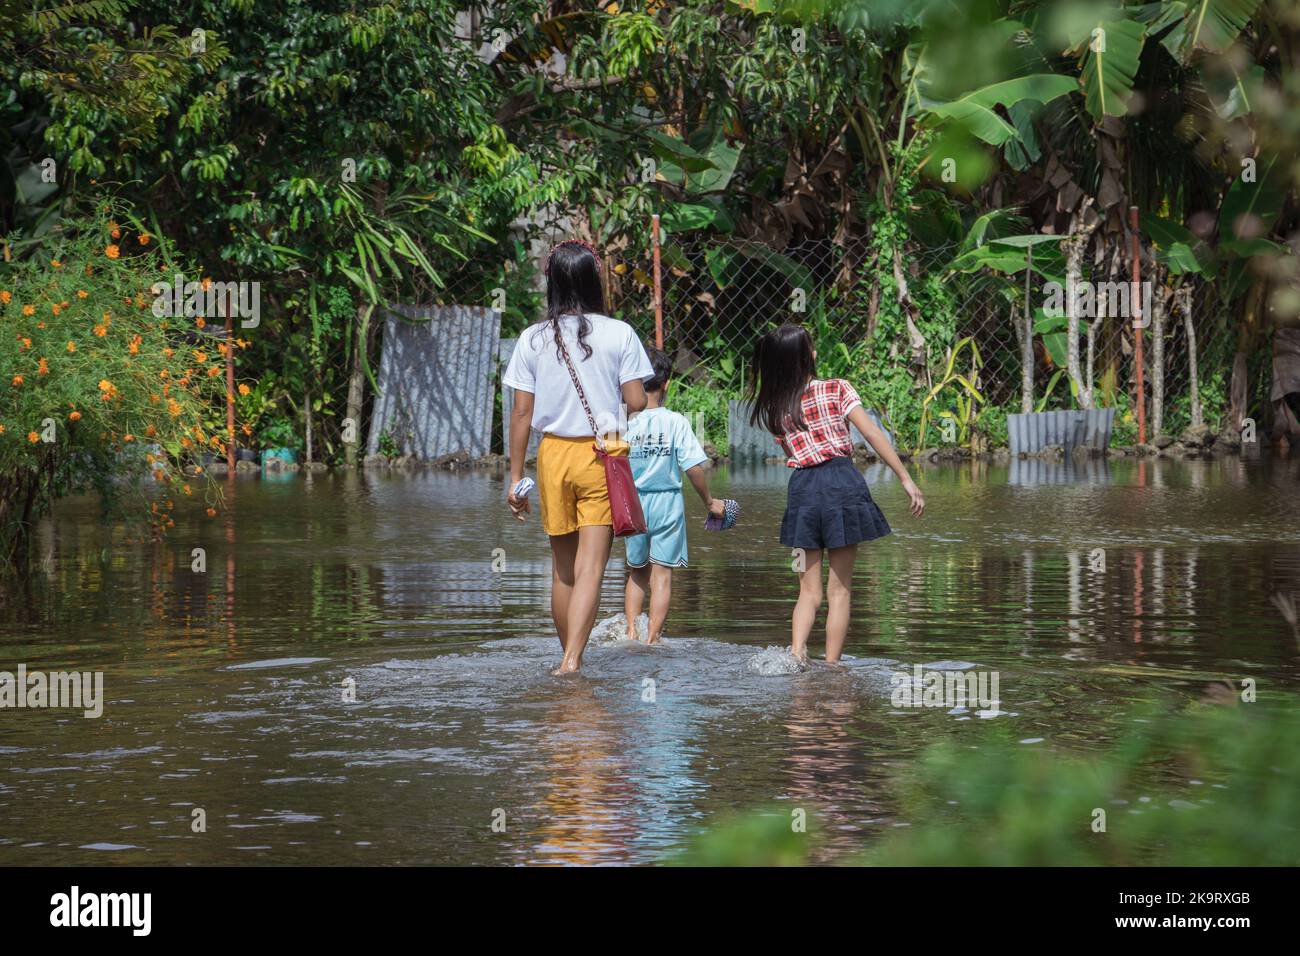 La tempête tropicale grave Paeng ou Nalgae a apporté des inondations et des pluies torrentielles au pays. Regardez les gens qui passent à gué dans la rue inondée. Banque D'Images